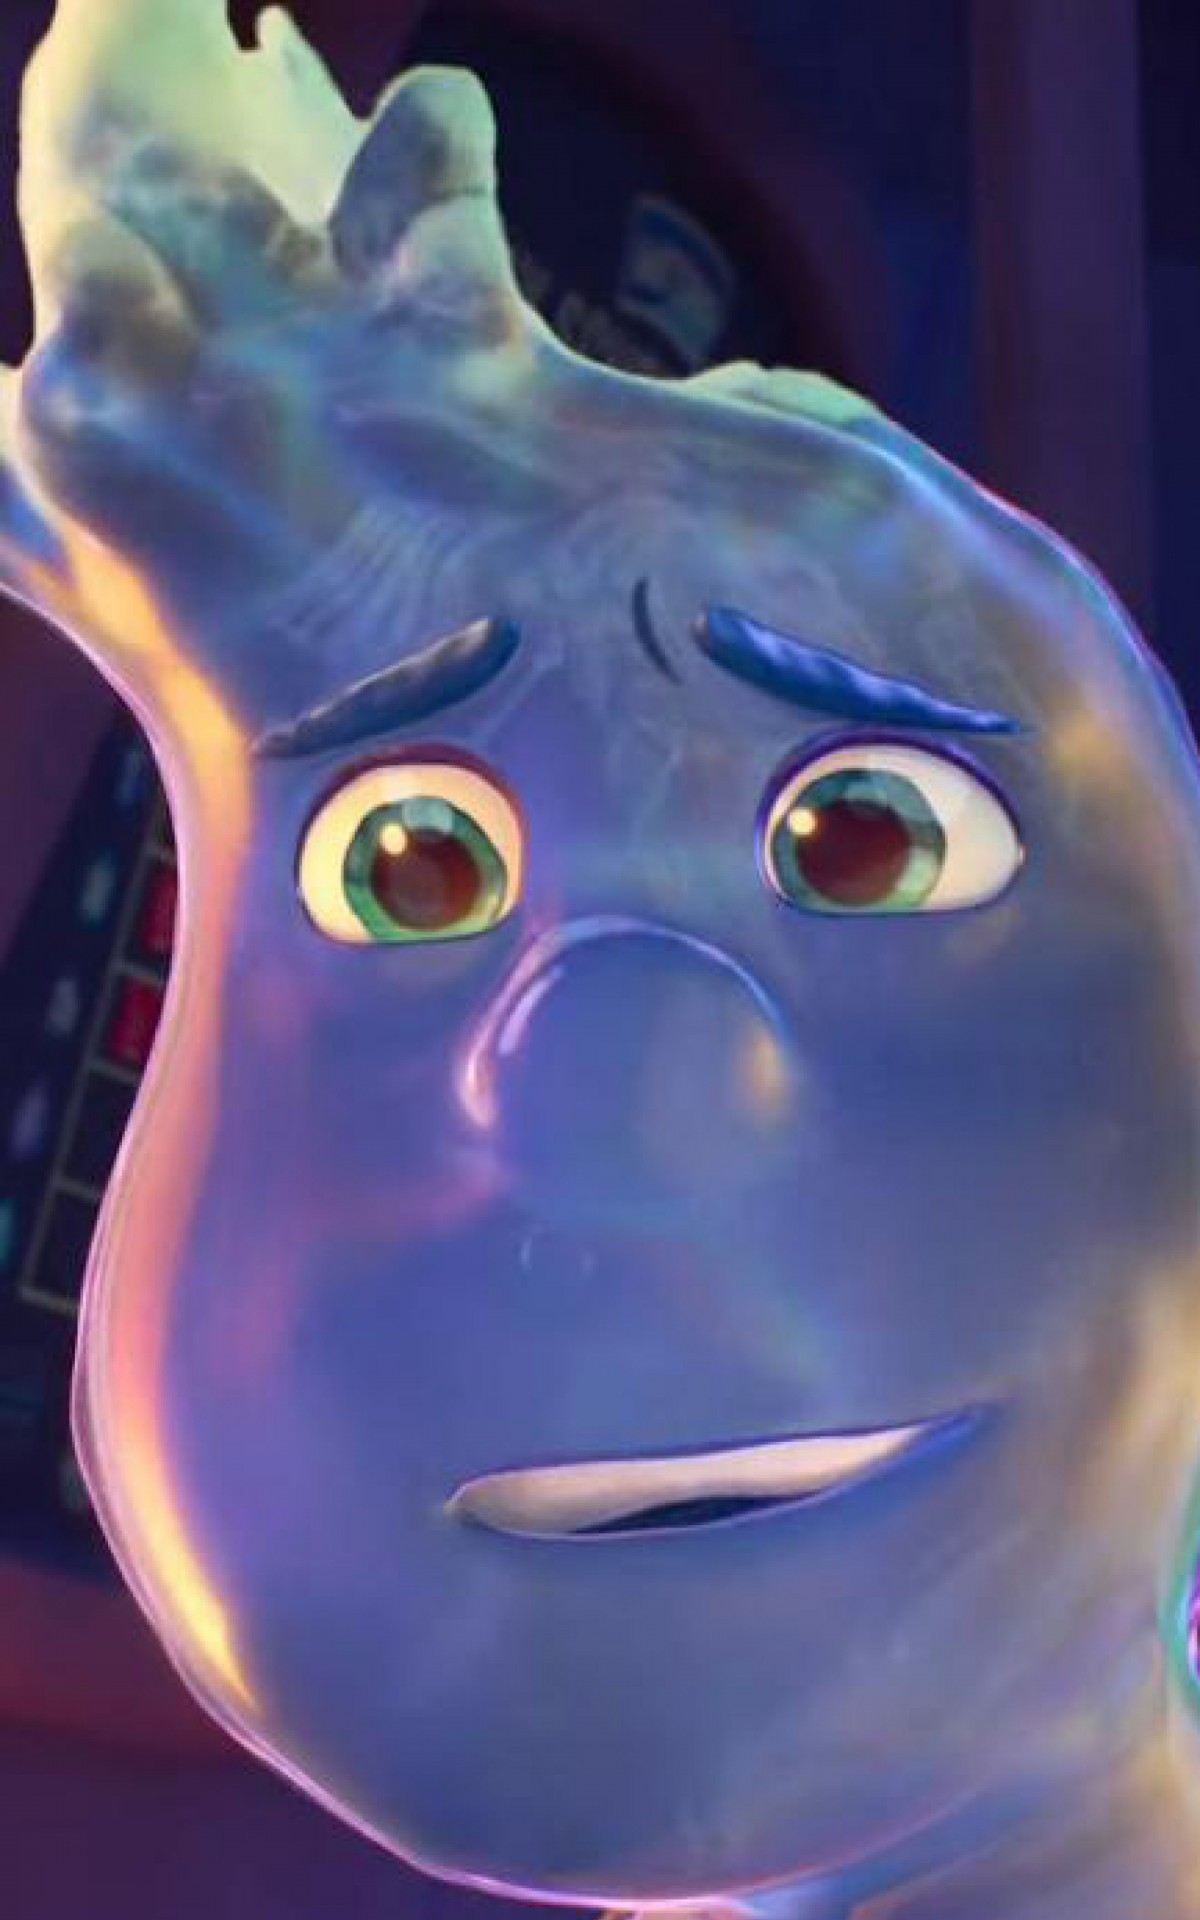 Água e fogo vão se misturar em 'Elementos', animação da Disney Pixar que  estreia nesta quinta :: Leiagora, Playagora